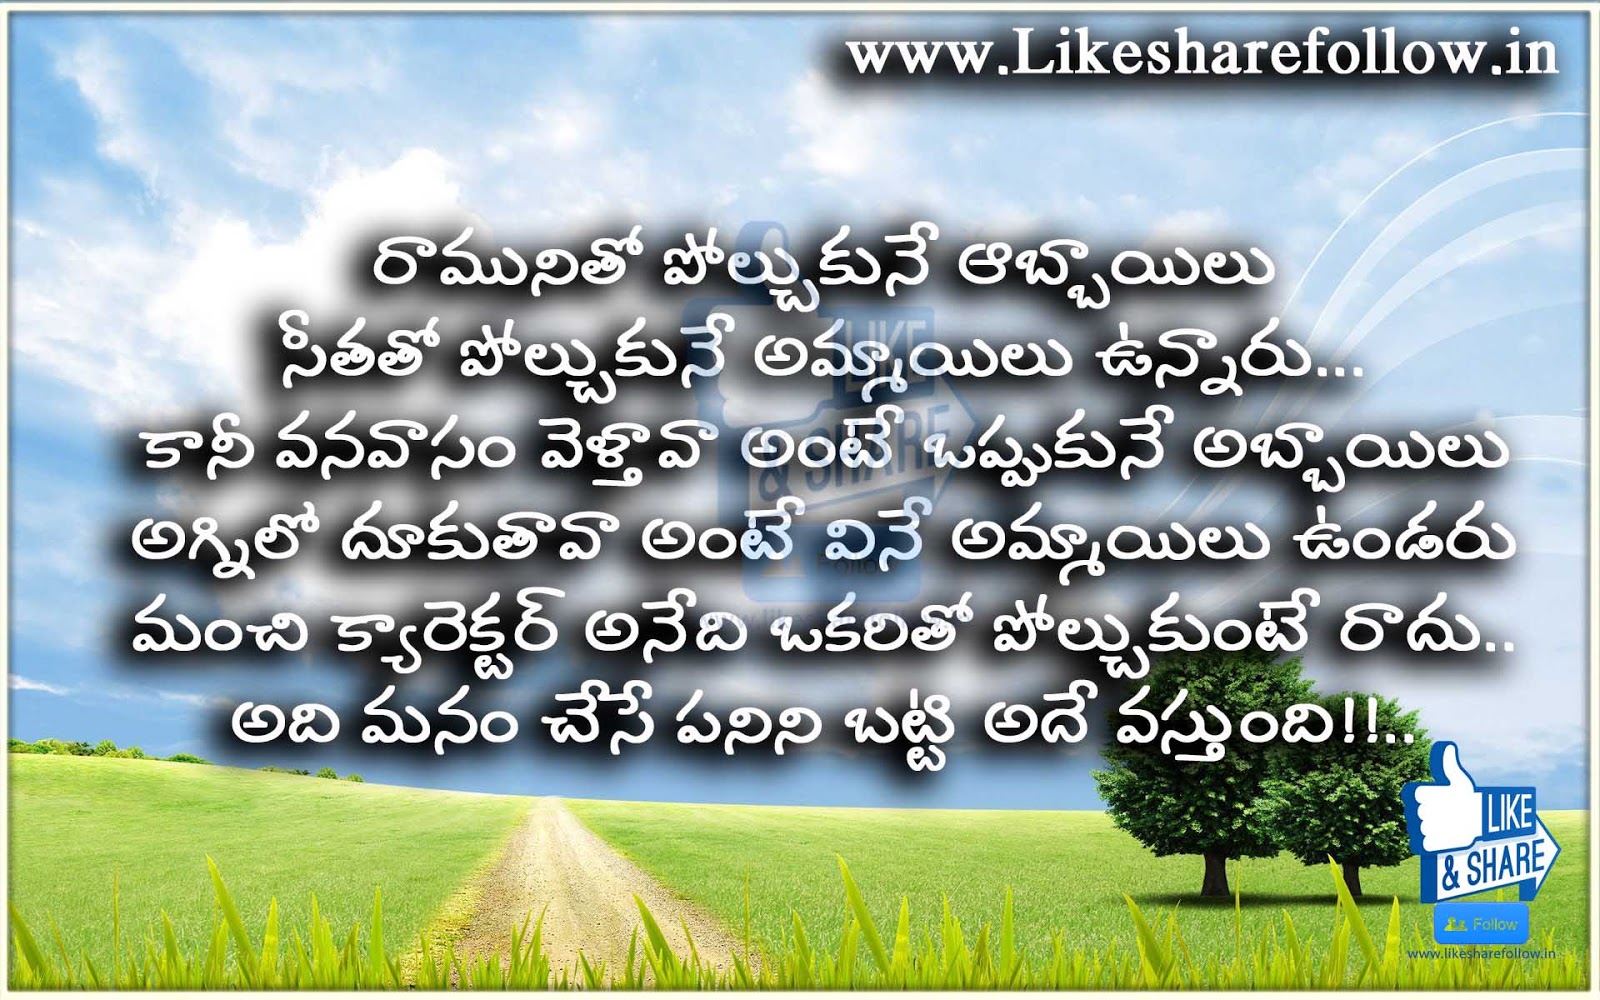 Inspire Quotes About Life In Telugu Telugu Quotes On Life Quotesgram